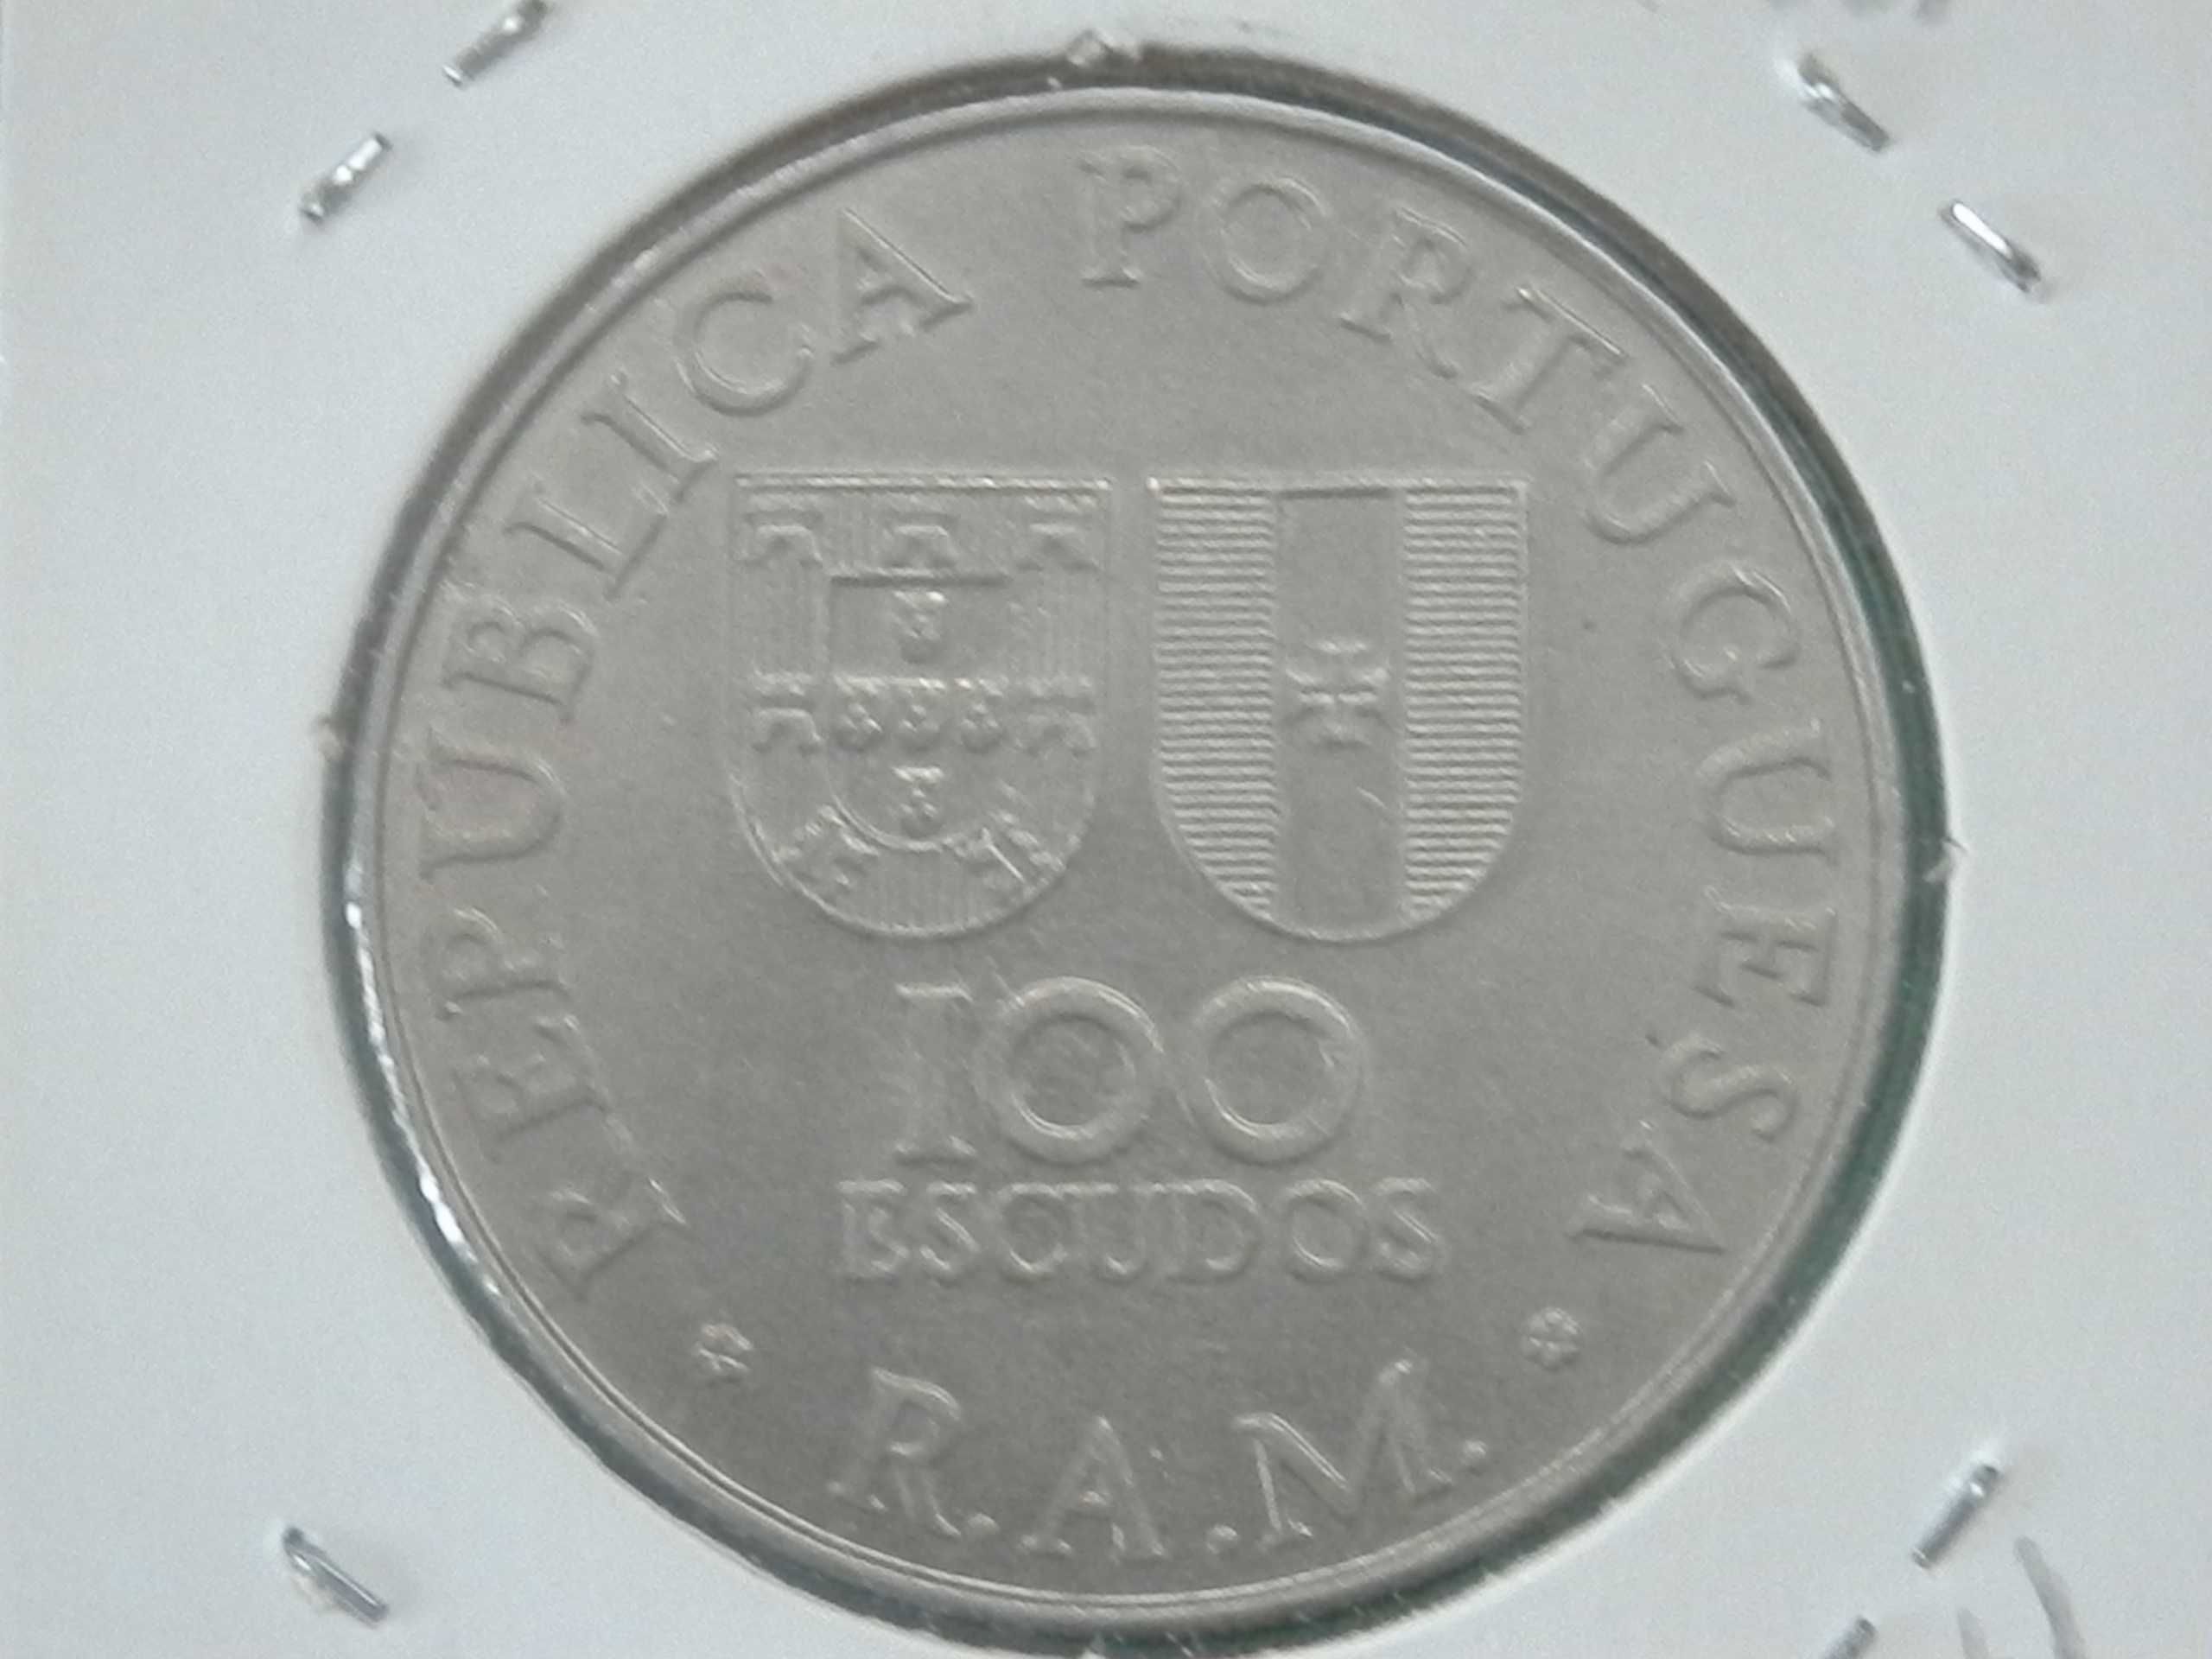 1024 - Comem: 100$00 escudos 1981 cuni, R.A. Madeira, por 4,75